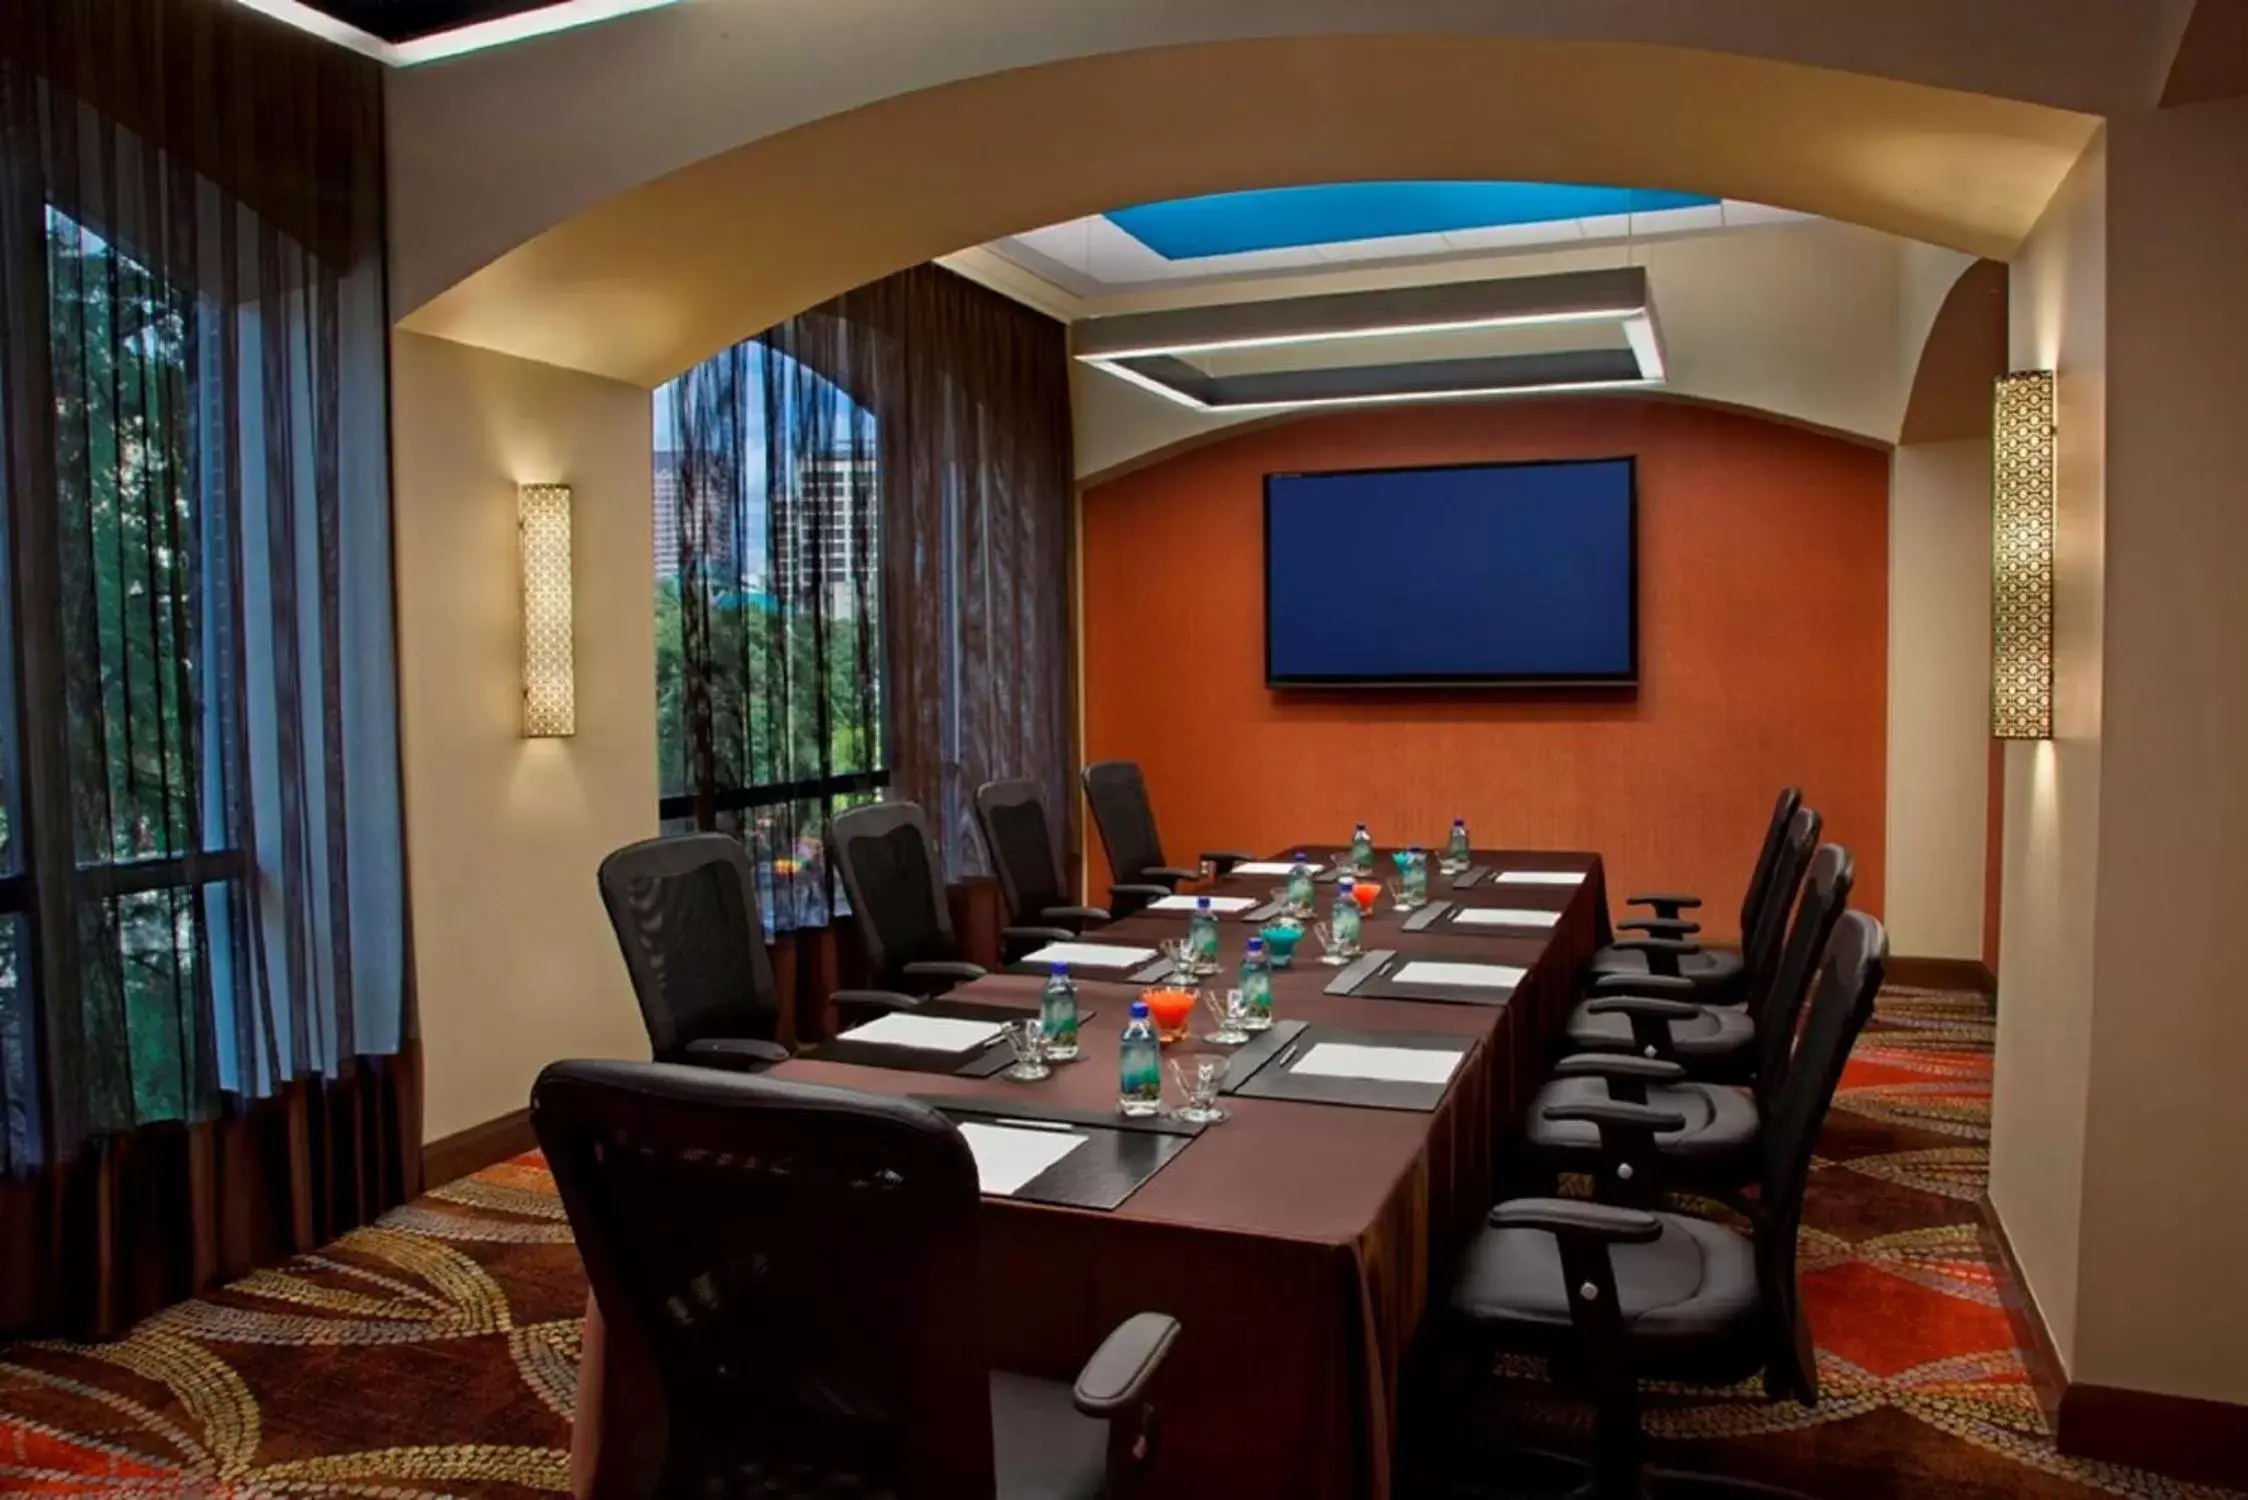 Meeting/conference room in Hilton Palacio del Rio